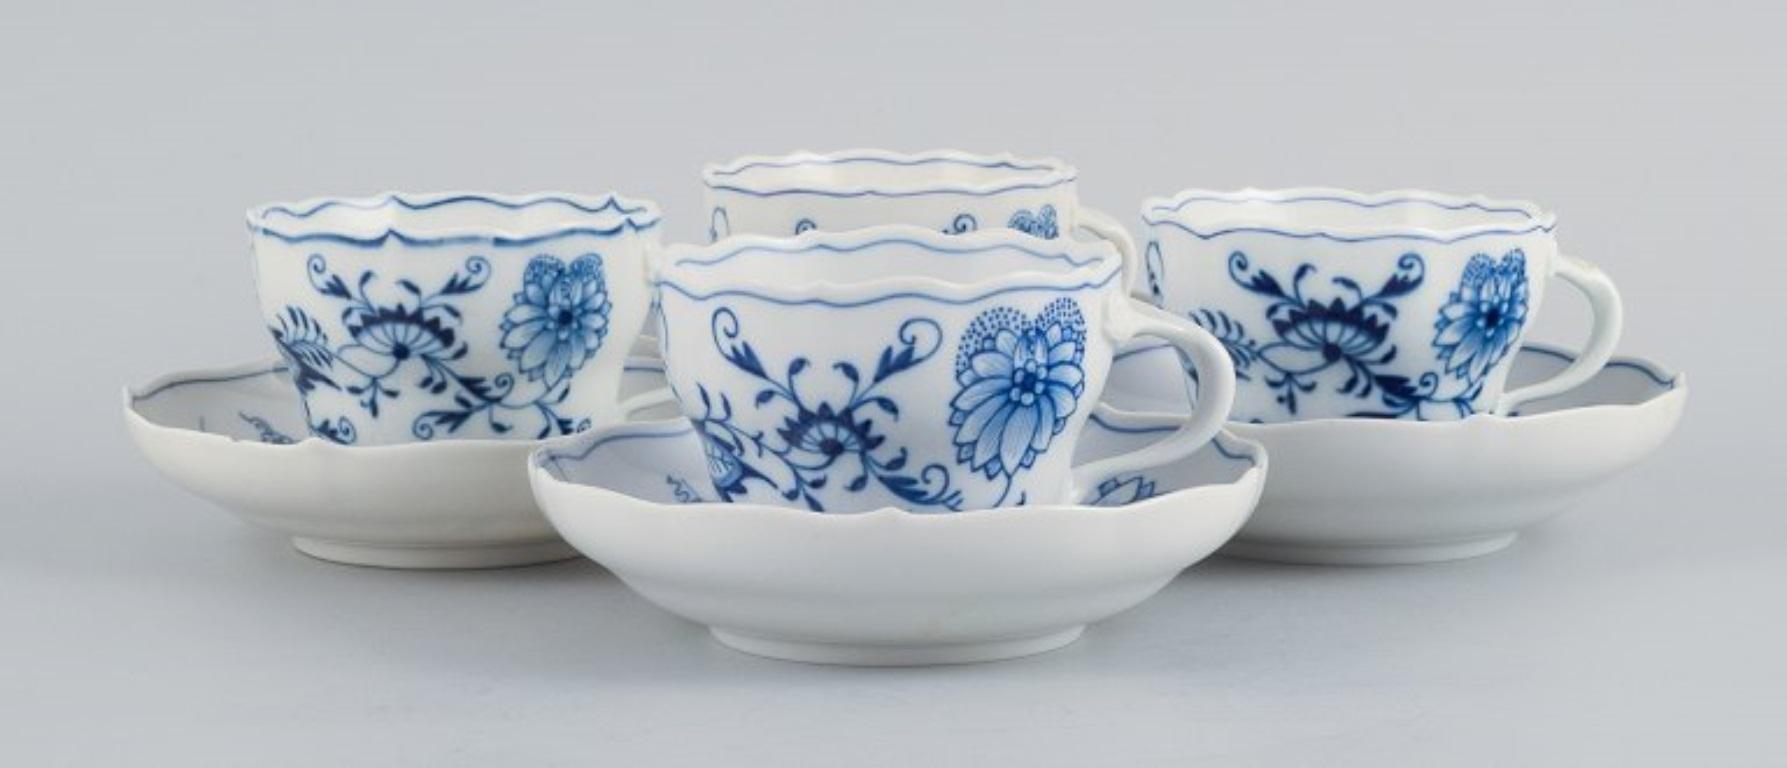 Meissen, Allemagne. Quatre tasses à café Meissen Blue Onion avec soucoupes en porcelaine peinte à la main.
Environ les années 1930.
En parfait état.
Marqué.
Première qualité d'usine.
Coupe : D 8,8 x H 6,7 cm.
Soucoupe : D 14,0 x H 3,0 cm.
Les